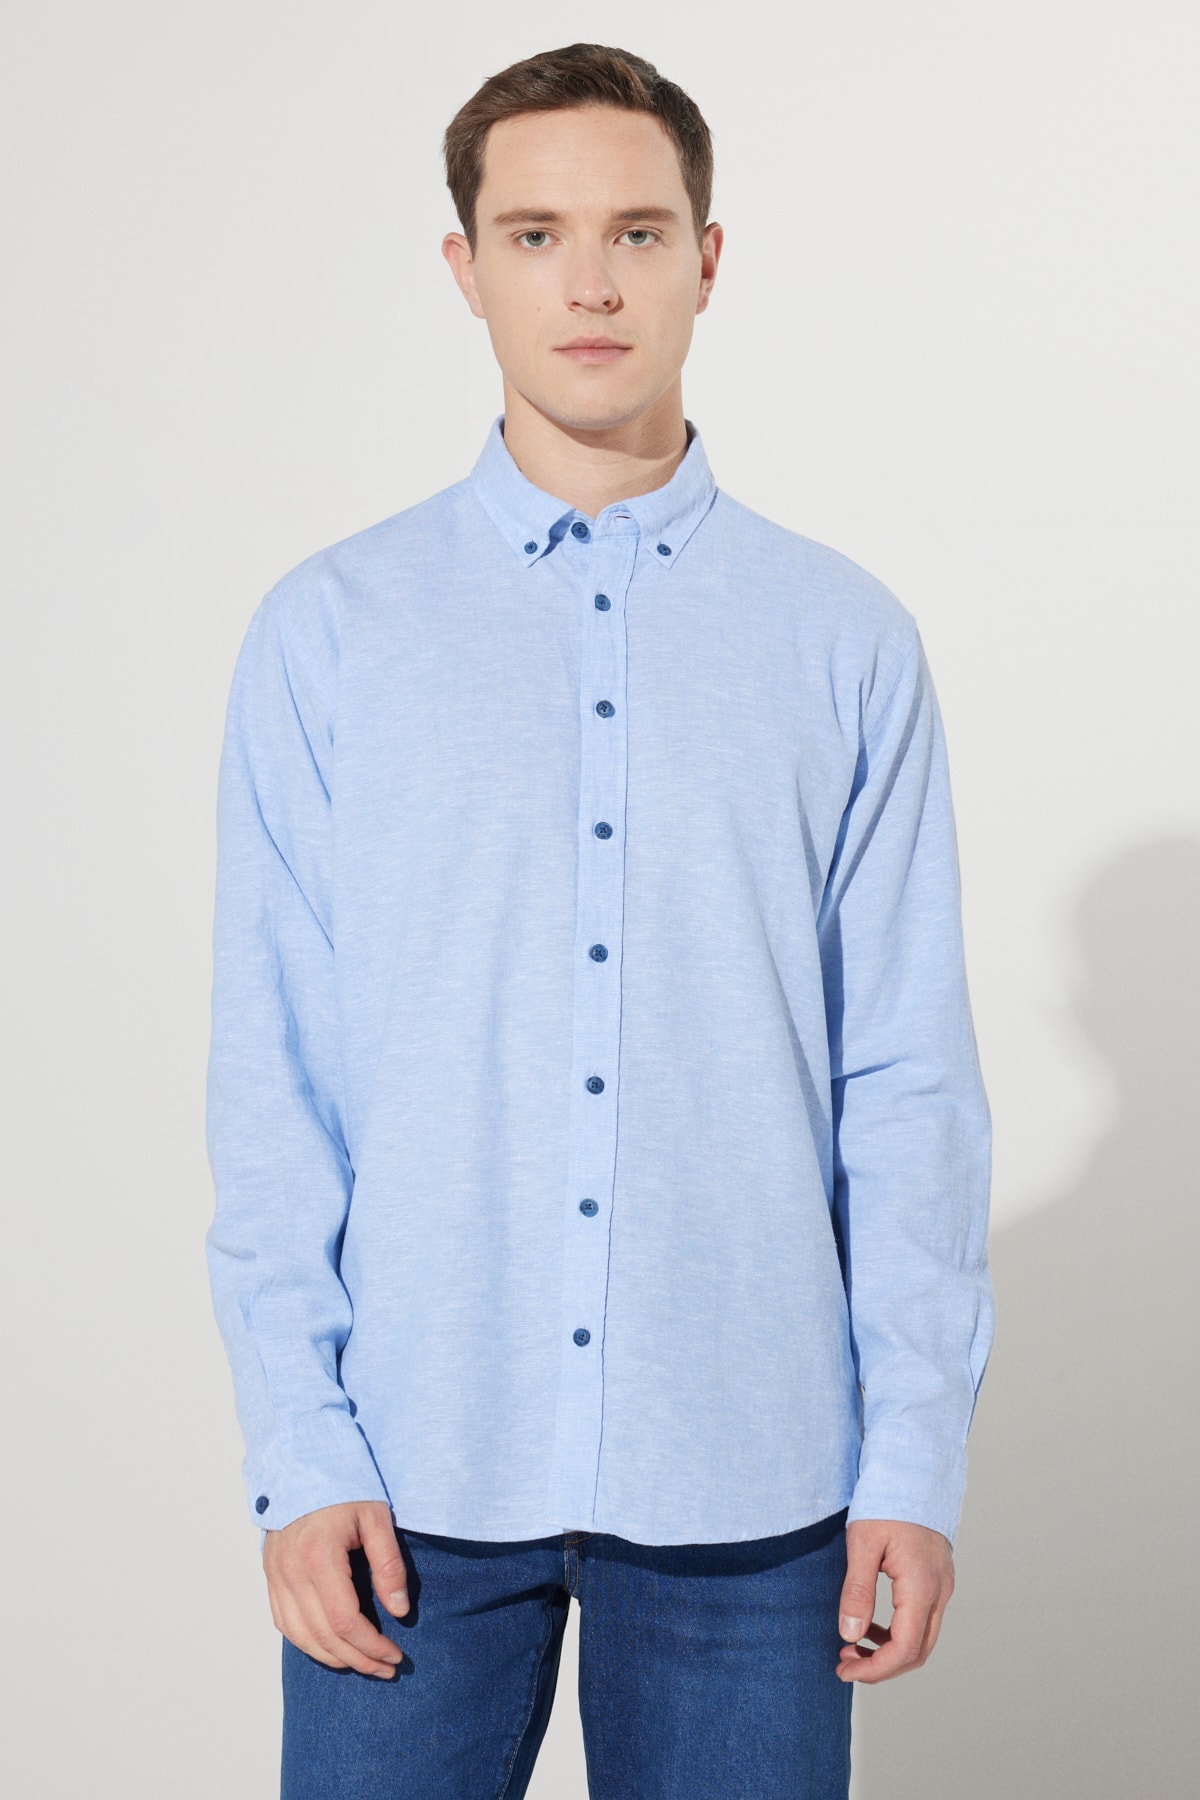 Levně ALTINYILDIZ CLASSICS Men's Blue Comfort Fit Comfy Cut Buttoned Collar Linen Shirt.